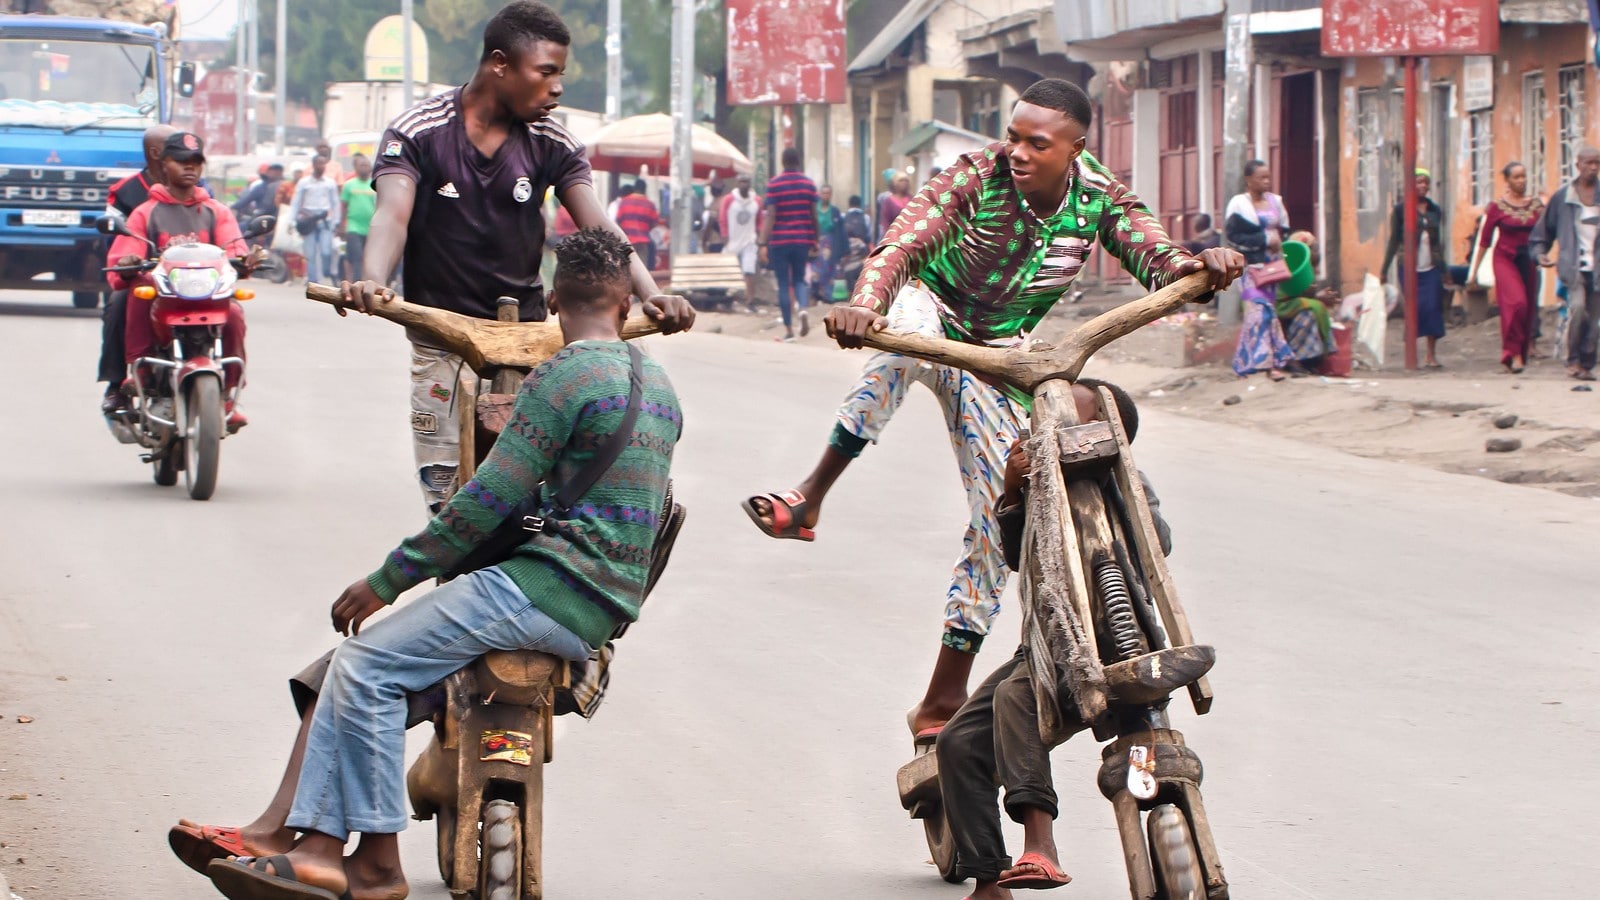 Tchukudus, des scooters artisanaux en bois permettant généralement  aux fermiers de transporter leurs récoles.
Goma, Kivu du nord, Congo.
Auteurs  : Joe Dordo Brnobic/Solent /SIPA
Numéro de reportage  : 00925260_000012